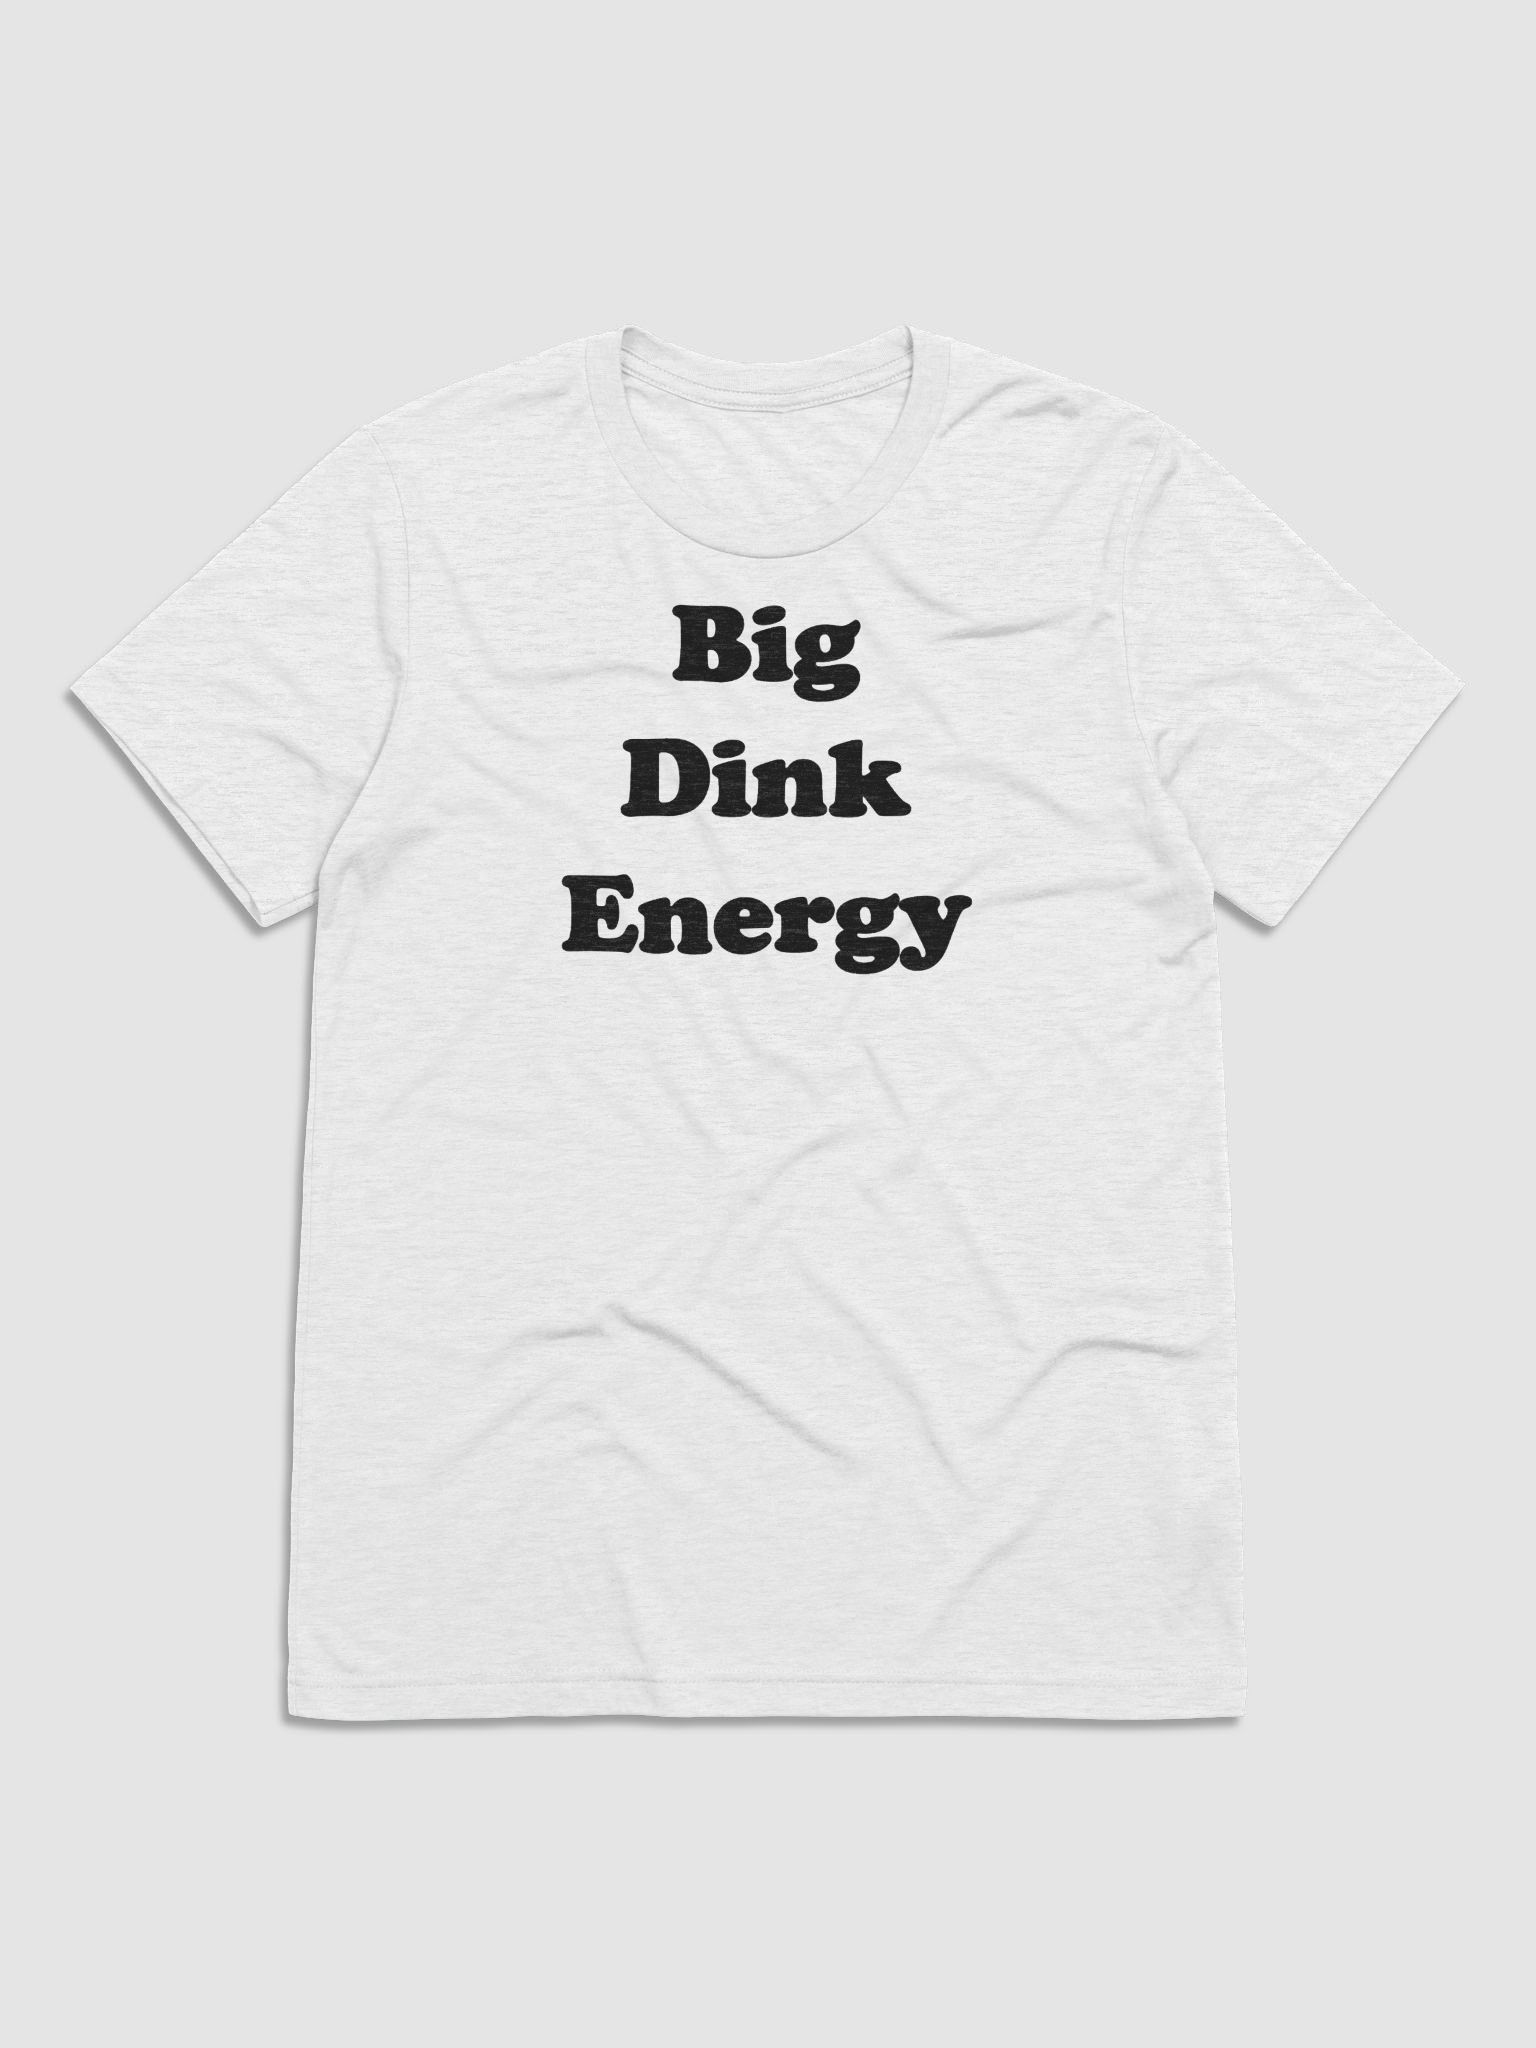 Big Dink Energy Tee | TheDink